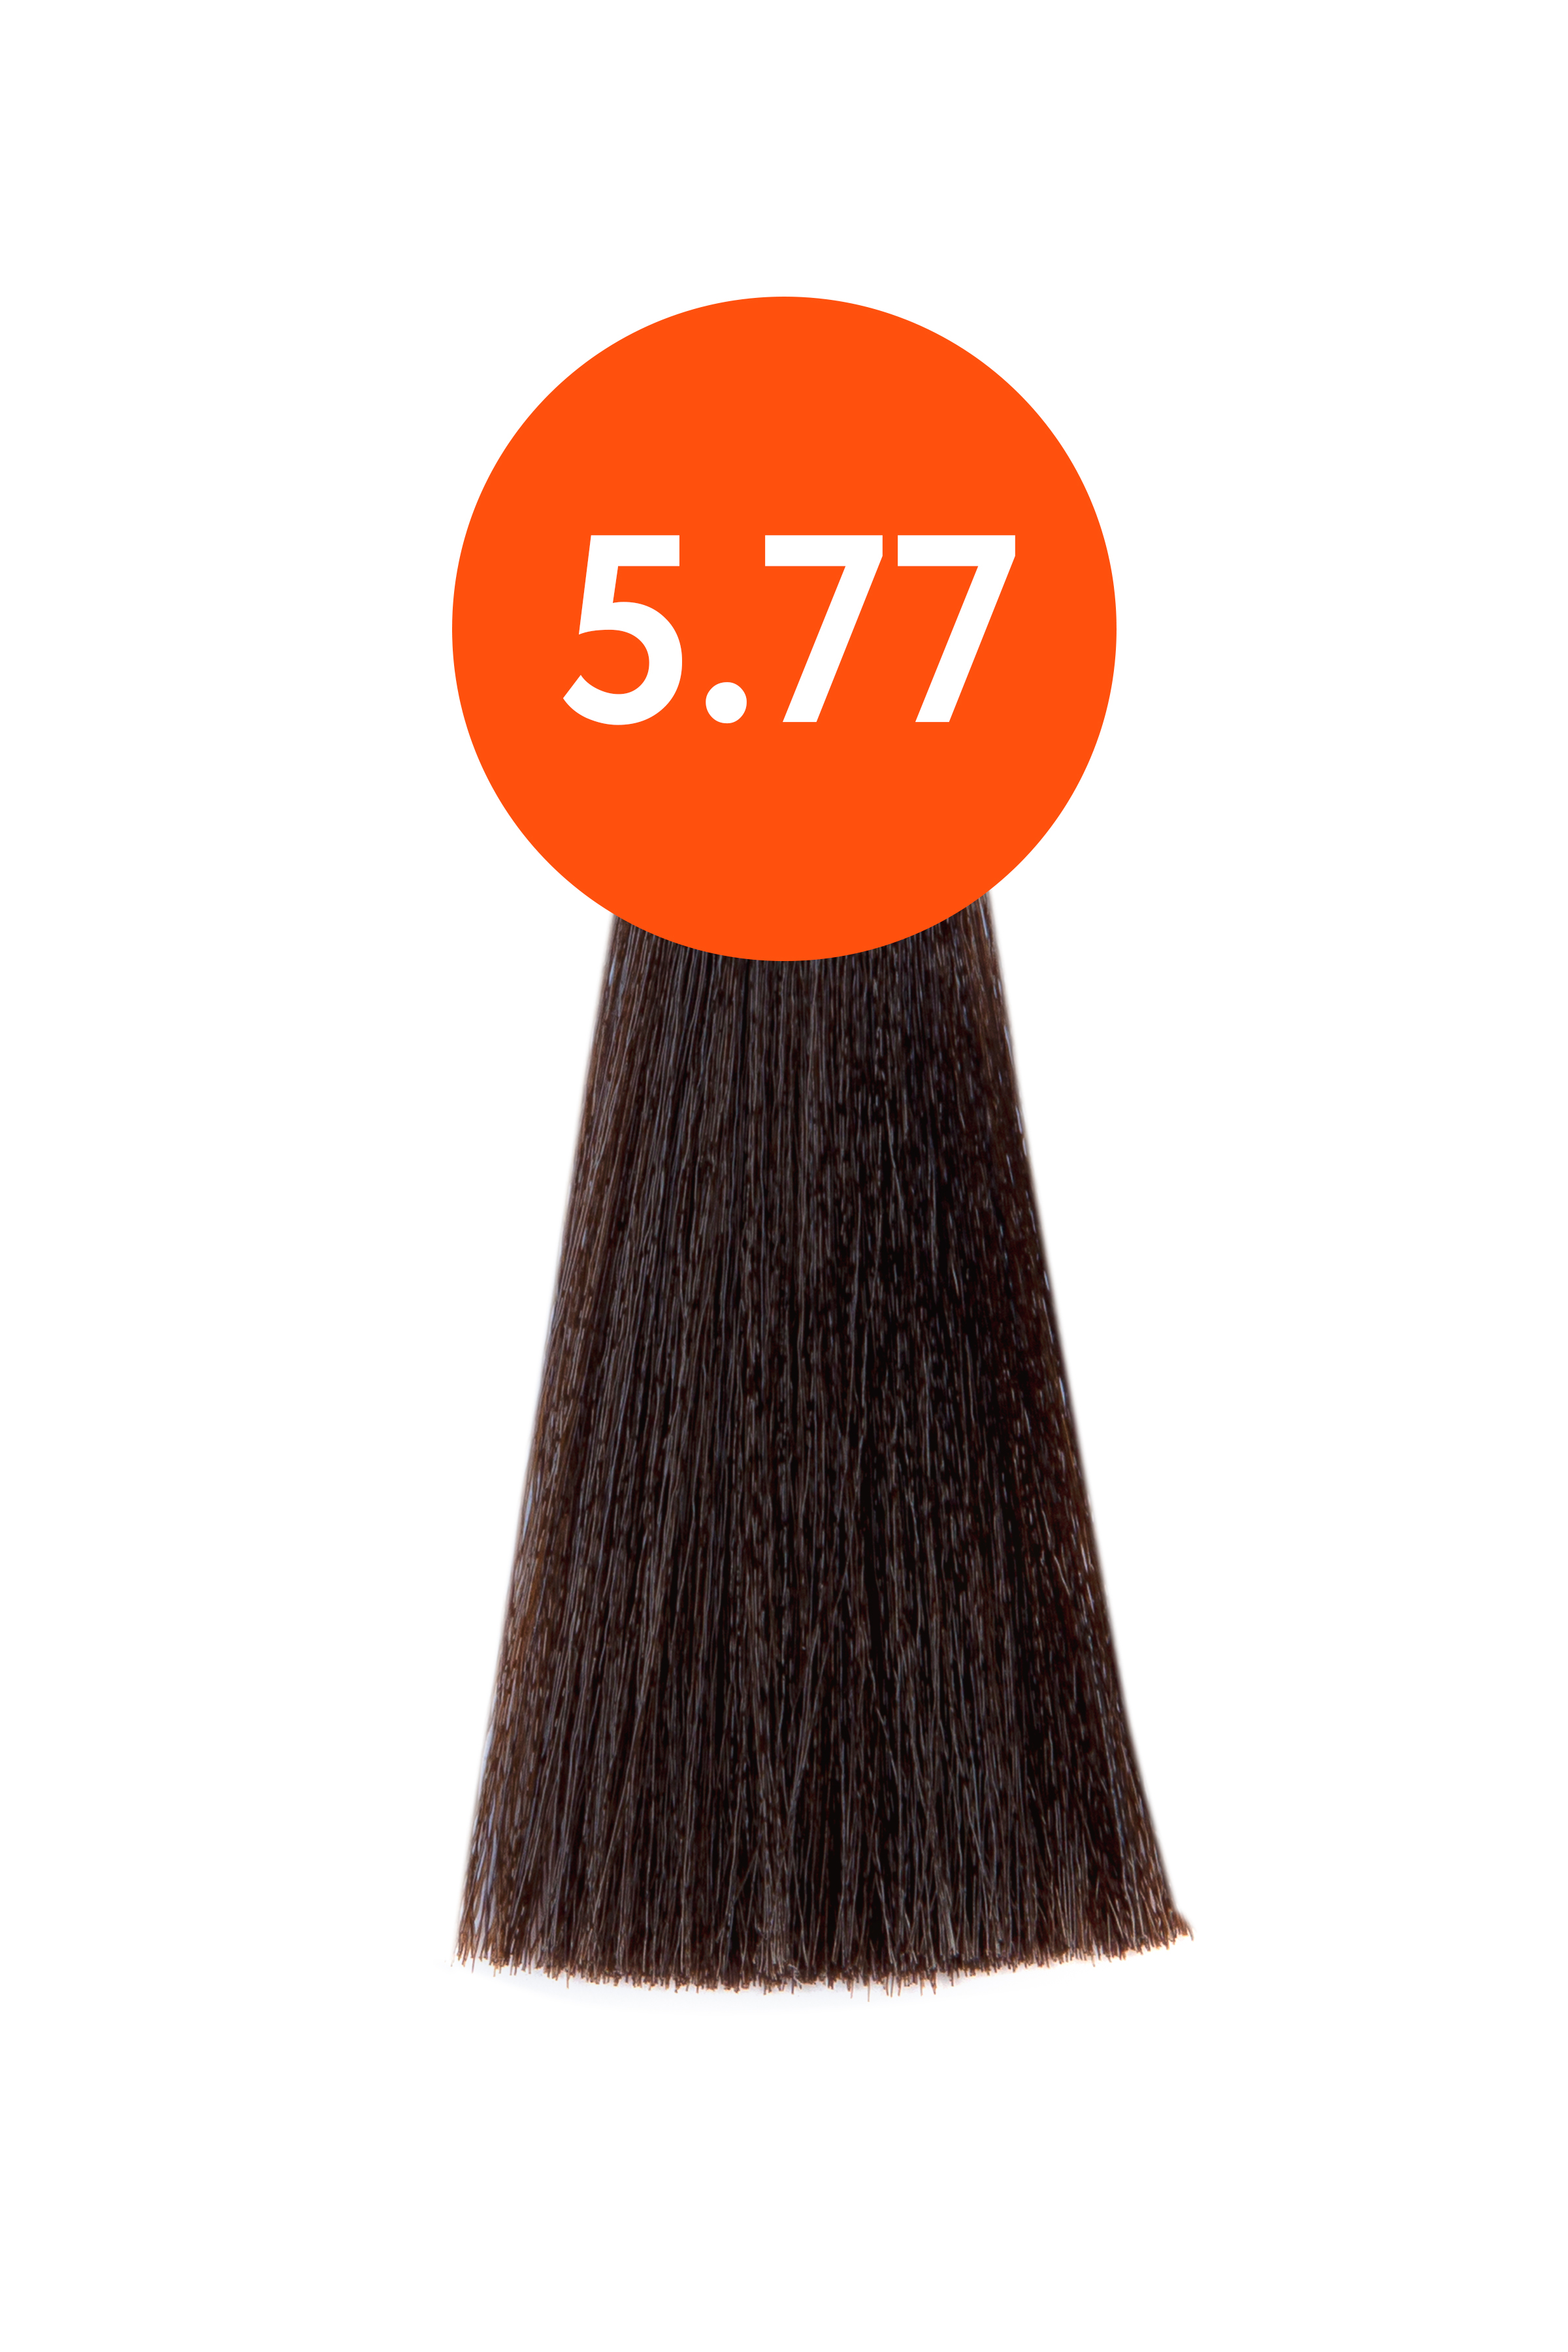 OLLIN "N-JOY"  5/77 – светлый шатен интенсивно-коричневый, перманентная крем-краска для волос 100мл